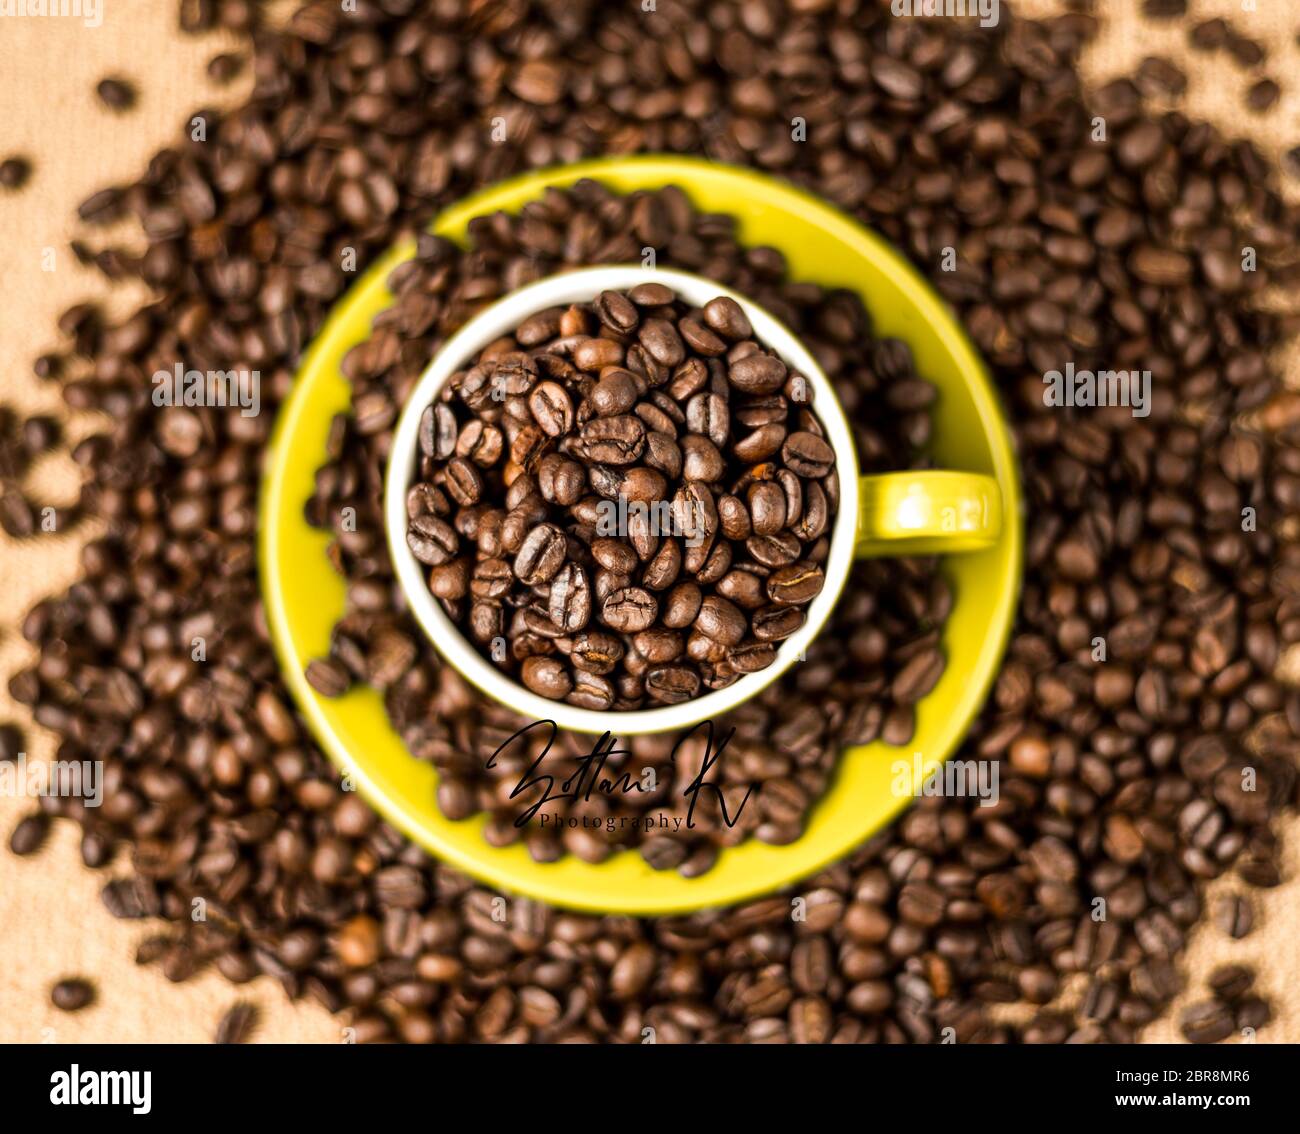 Braun geröstete Kaffeebohnen, Samen auf dunklem Hintergrund. Espresso dunkel, Aroma, schwarzen Koffein Getränk. Closeup isolierte Energie Mokka, Cappuccino Zutat. Stockfoto